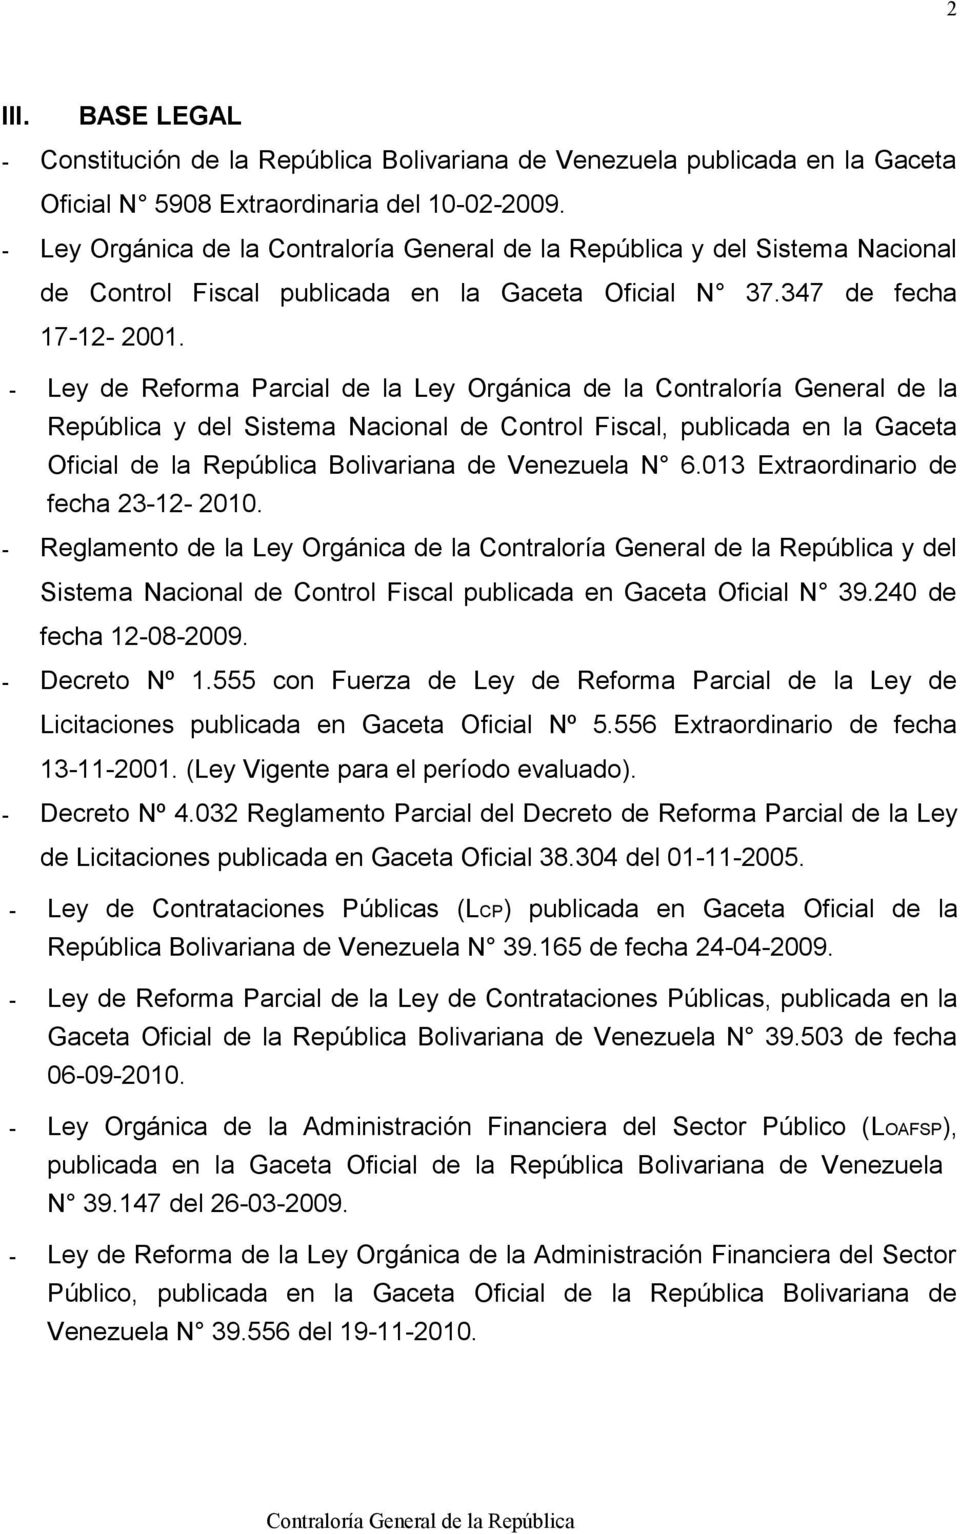 - Ley de Reforma Parcial de la Ley Orgánica de la Contraloría General de la República y del Sistema Nacional de Control Fiscal, publicada en la Gaceta Oficial de la República Bolivariana de Venezuela